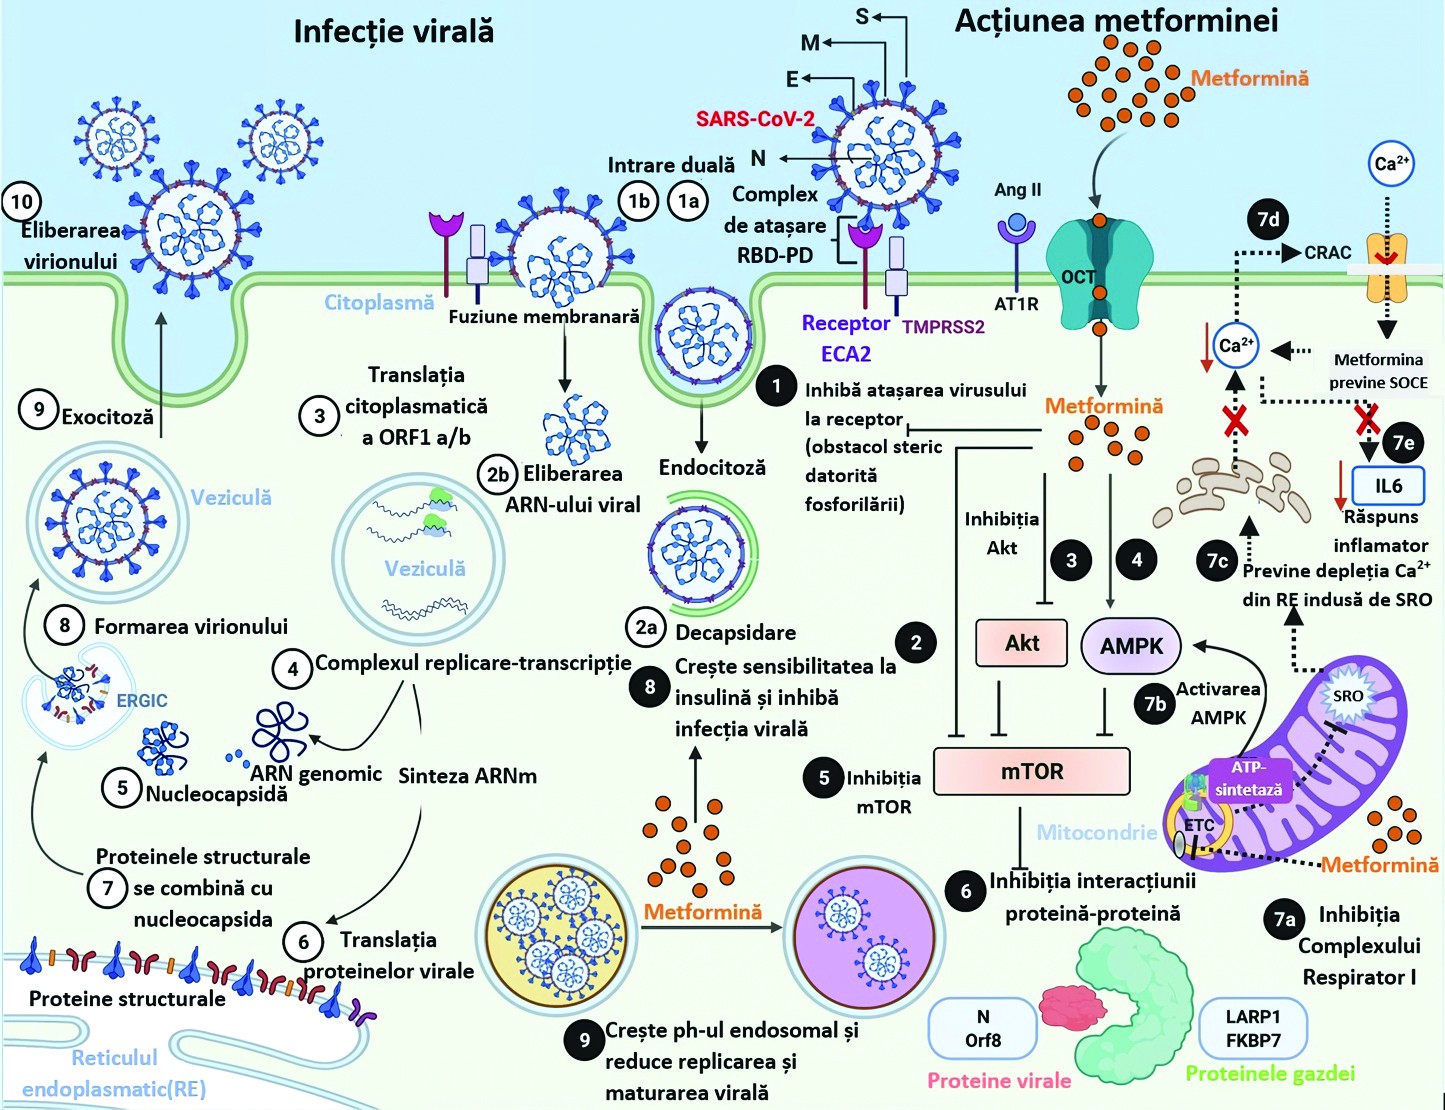 Figura 1. Patogeneza virală şi intervenţiile metforminei(21) ECA2 – enzima de conversie a angiotensinei 2; COVID-19 – boala Coronavirus 2019; CRAC – canal Ca2+ activat cu eliberarea Ca2+; ER – reticul endoplasmatic; ERGIC – ER‑Golgi compartiment intermediar; IL – interleukină; mTOR – ţintă de rapamicină la mamifere; PD – domeniul peptidazei; RBD – domeniu de legare la receptor; SRO – specii reactive de oxigen; SARS-CoV-2 – sindrom respirator acut sever Coronavirus 2; SOCE – intrare de calciu în celule